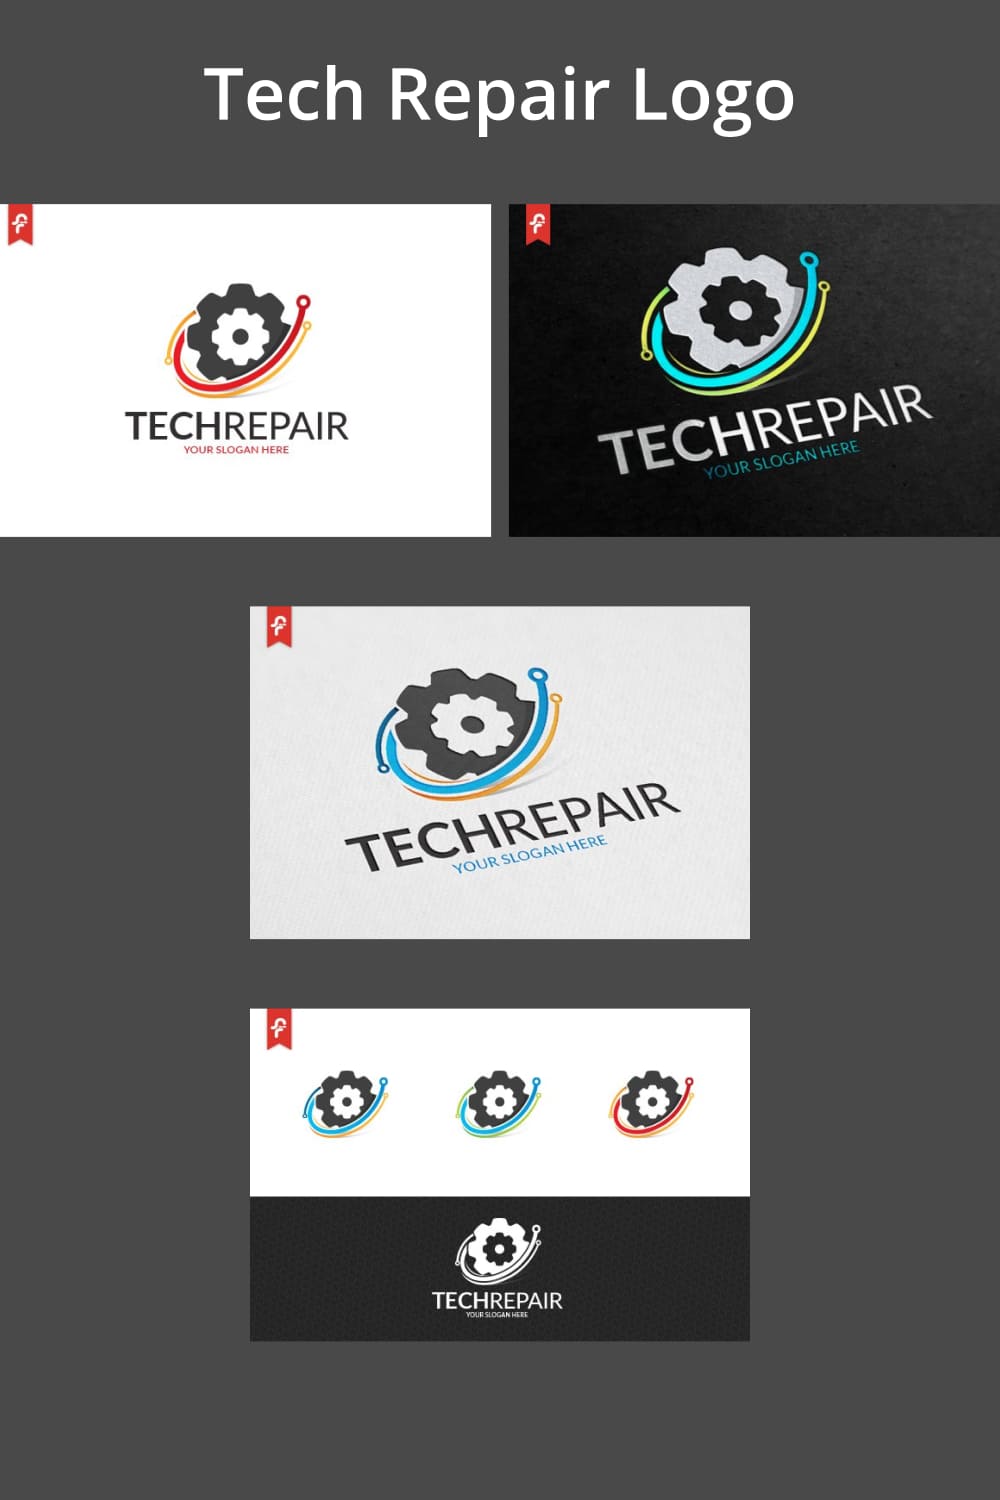 Tech Repair Logo - preview image.